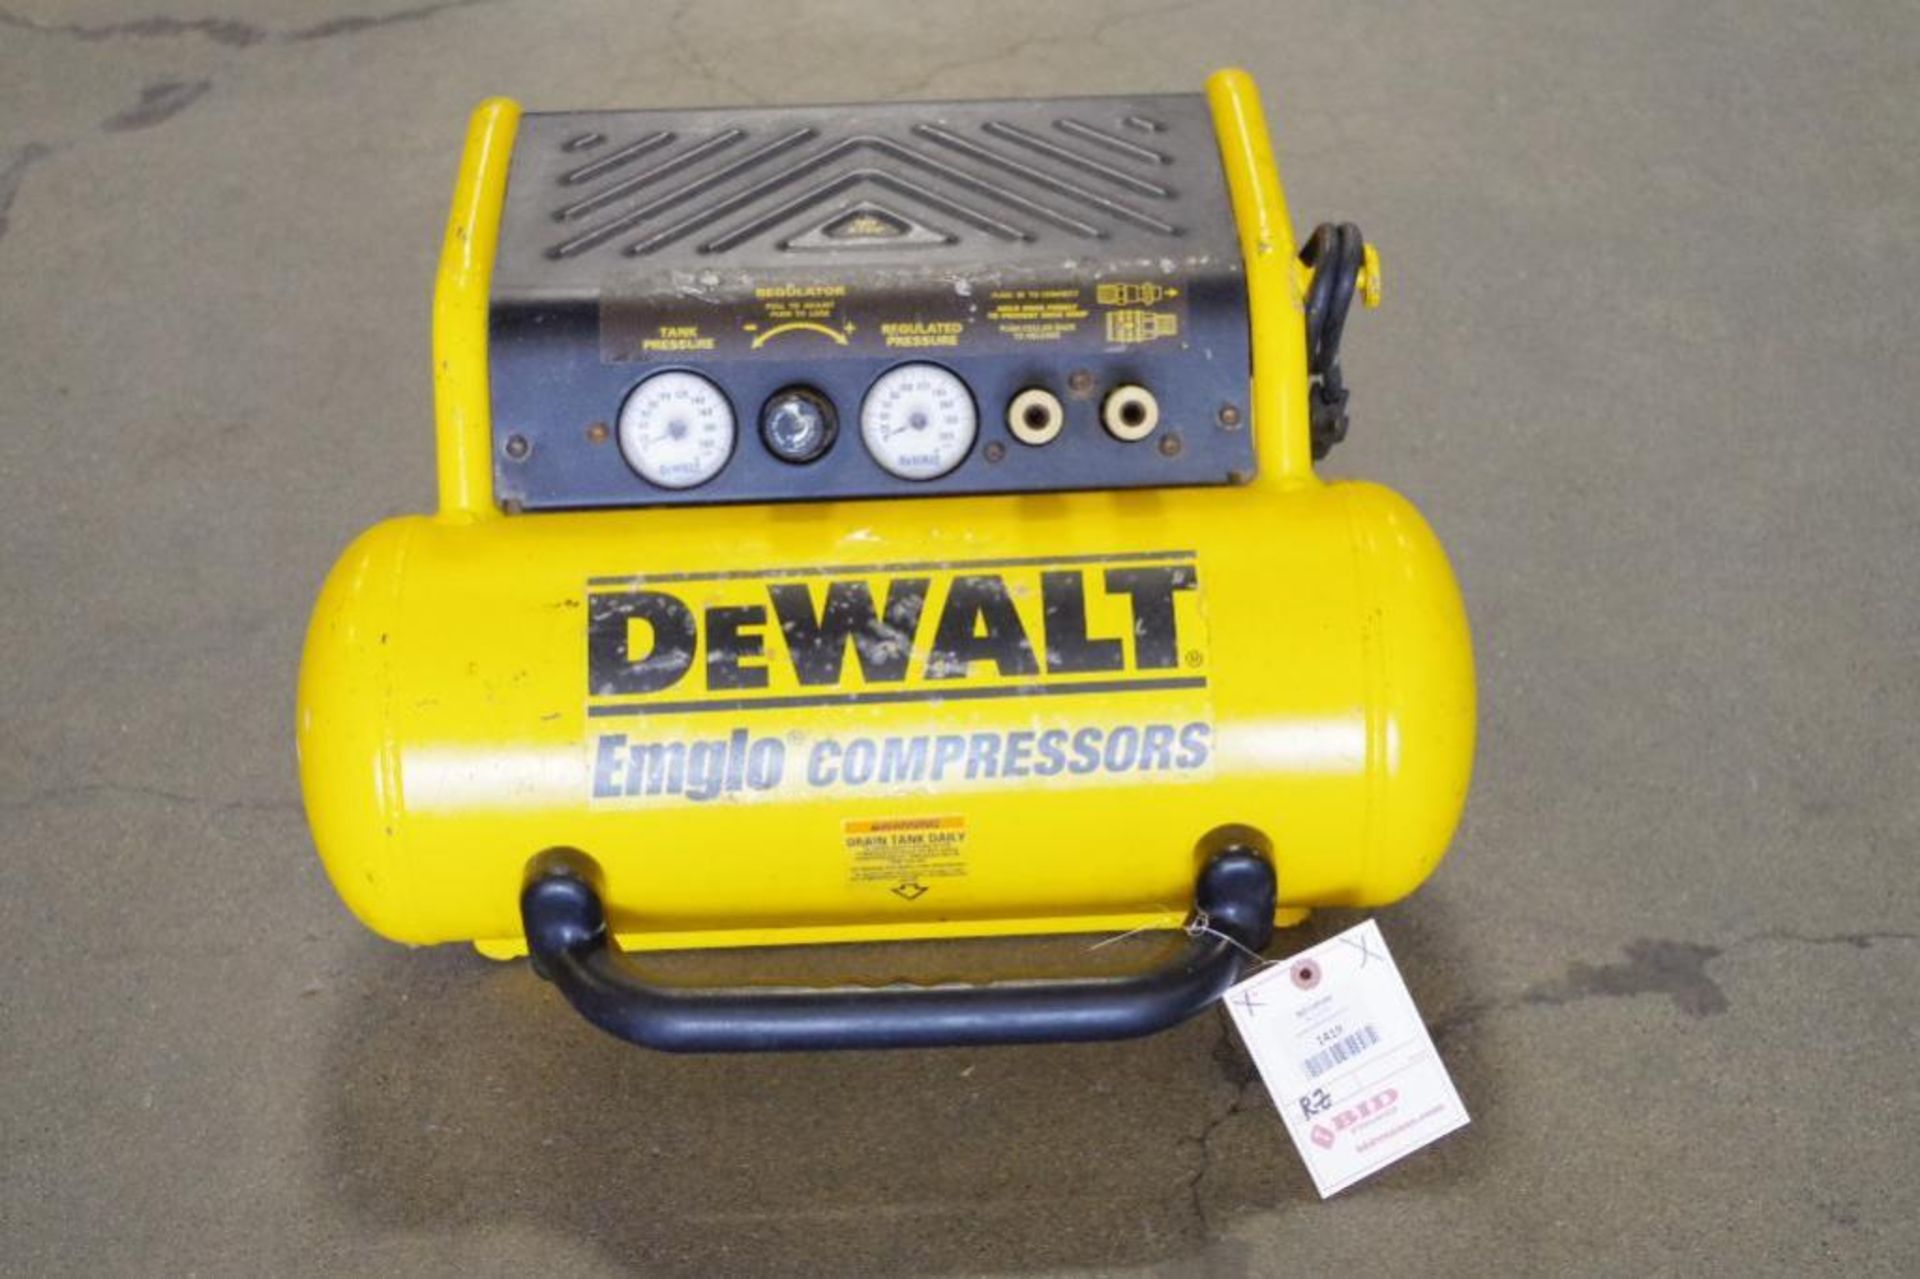 DEWALT 4-1/2-Gallon, 120V, Hand Carry Compressor, M/N D55155 - Image 3 of 4